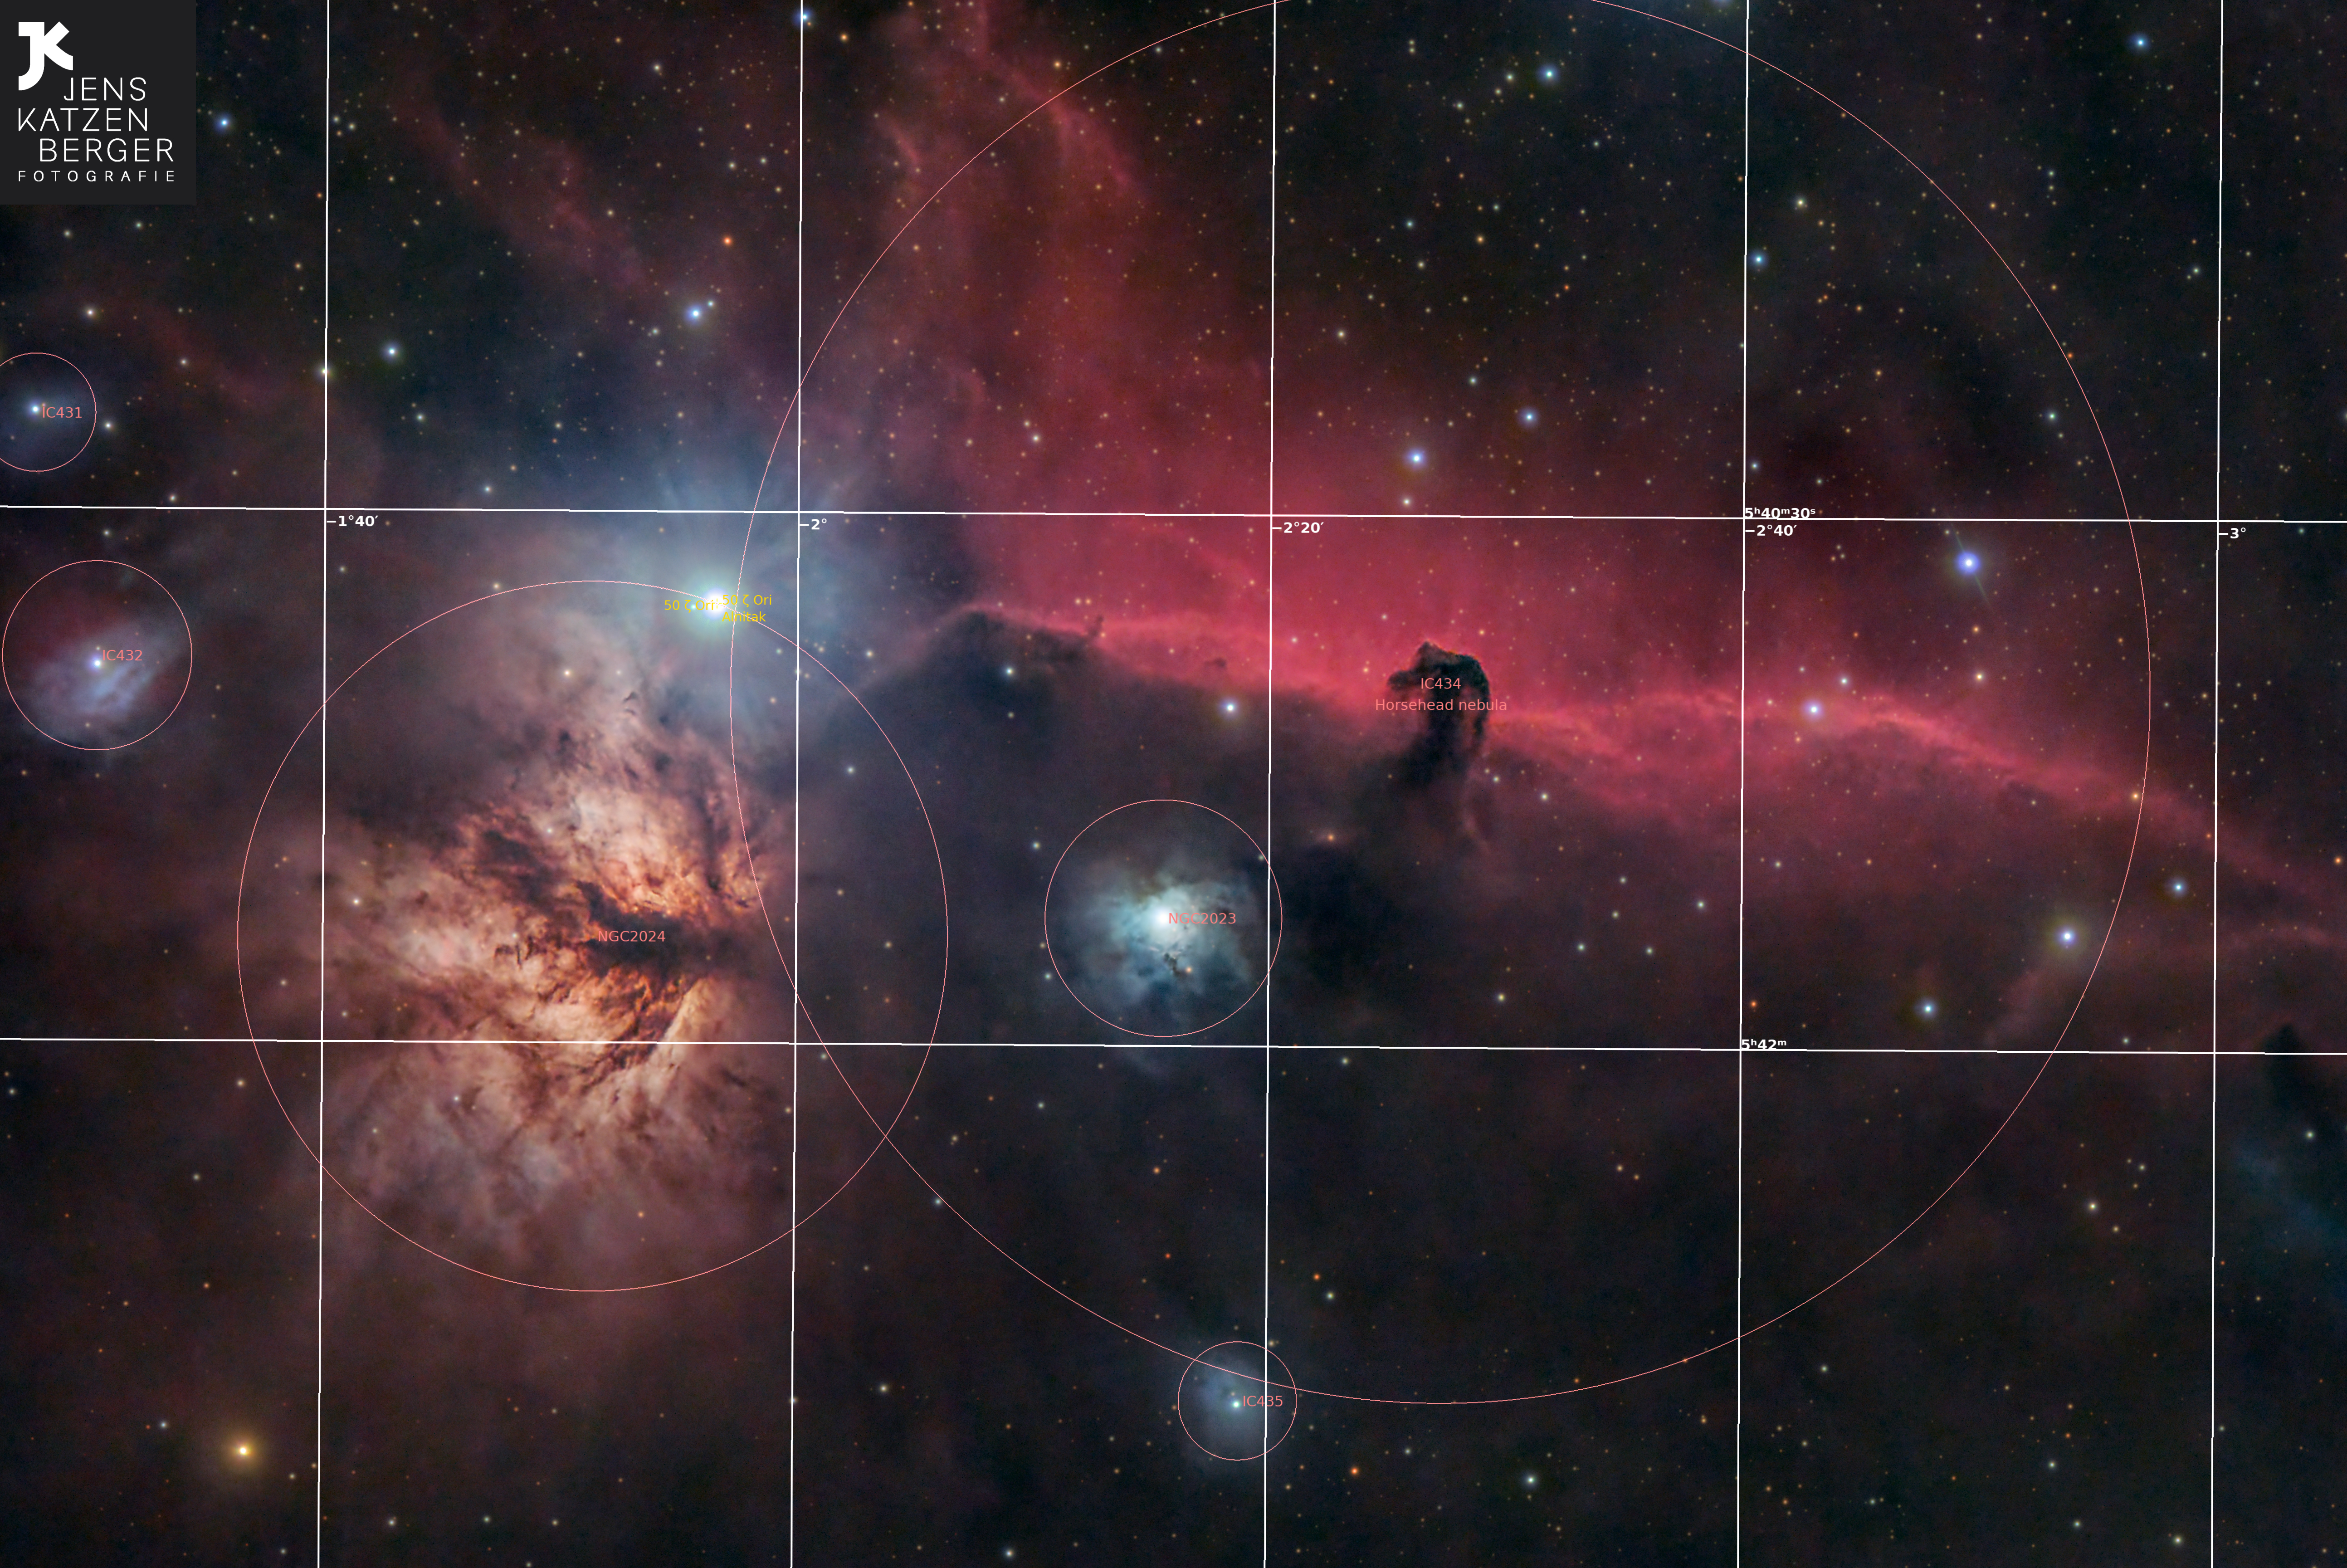 Deep Sky Objekt Pferdekopfnebel - IC 434 - Astrofotografie